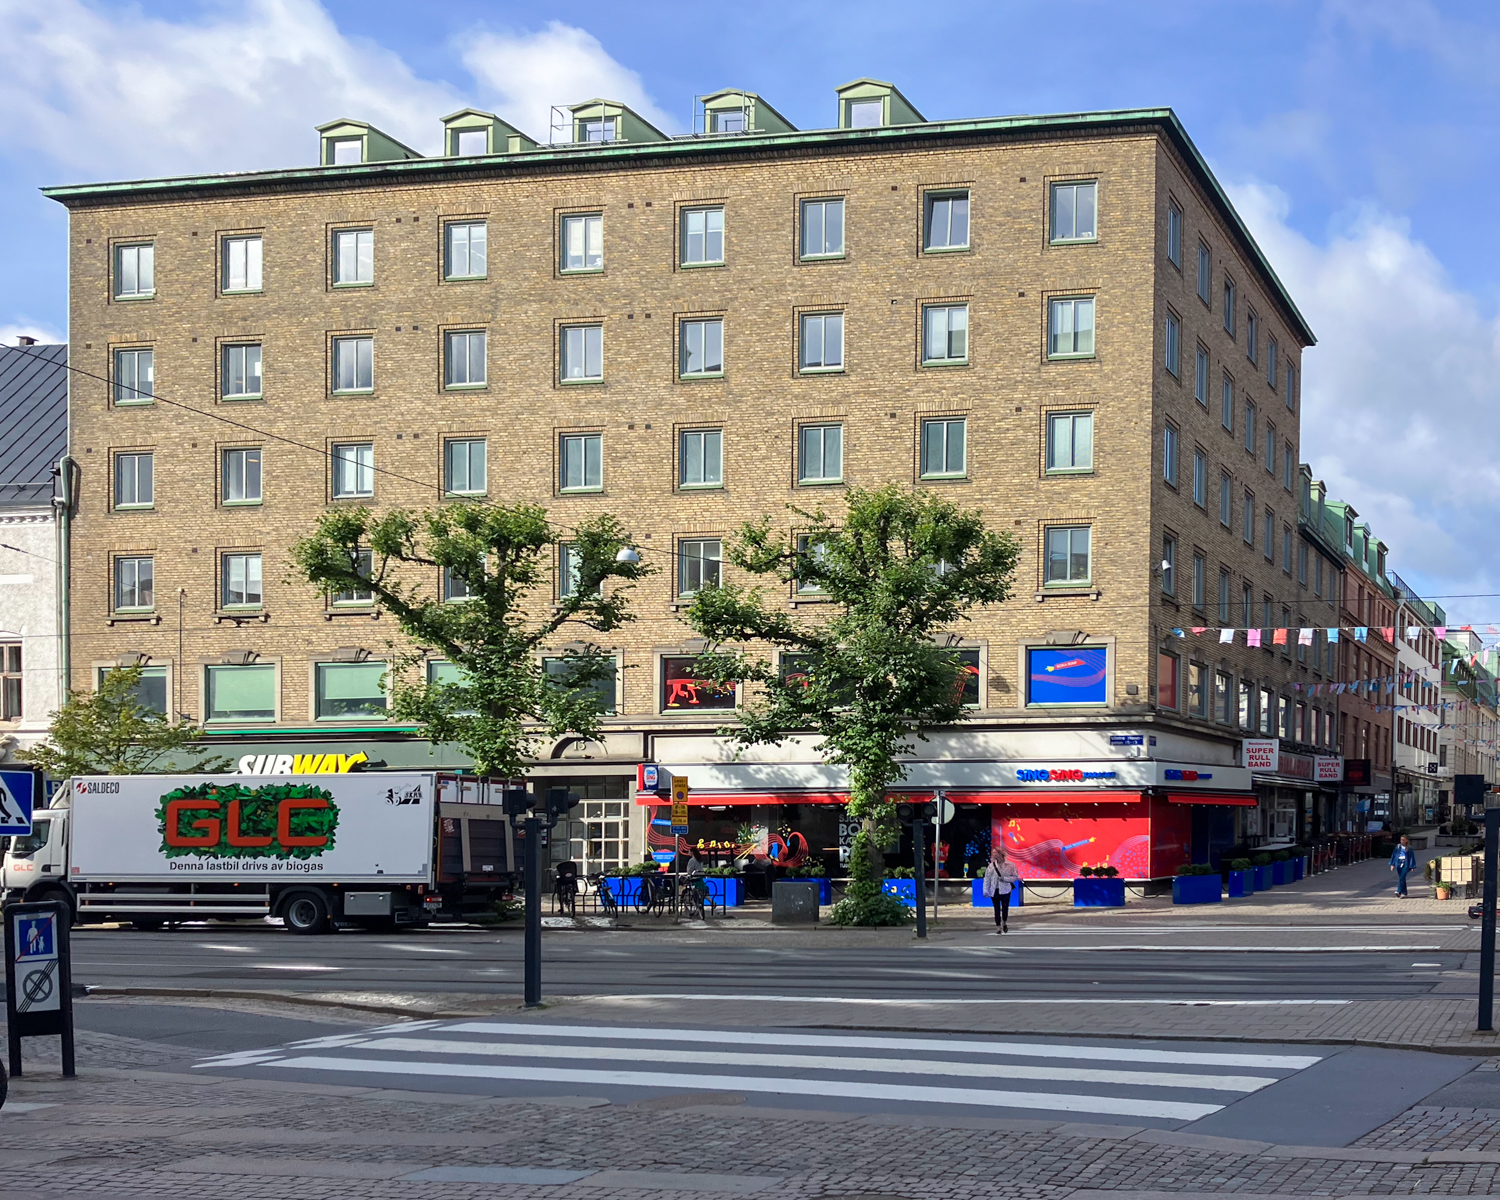 Gatuvy nära Göteborgs Domkyrka med synlig trafik, inklusive en lastbil och träd längs gatan och stadens typiska arkitektur i bakgrunden.